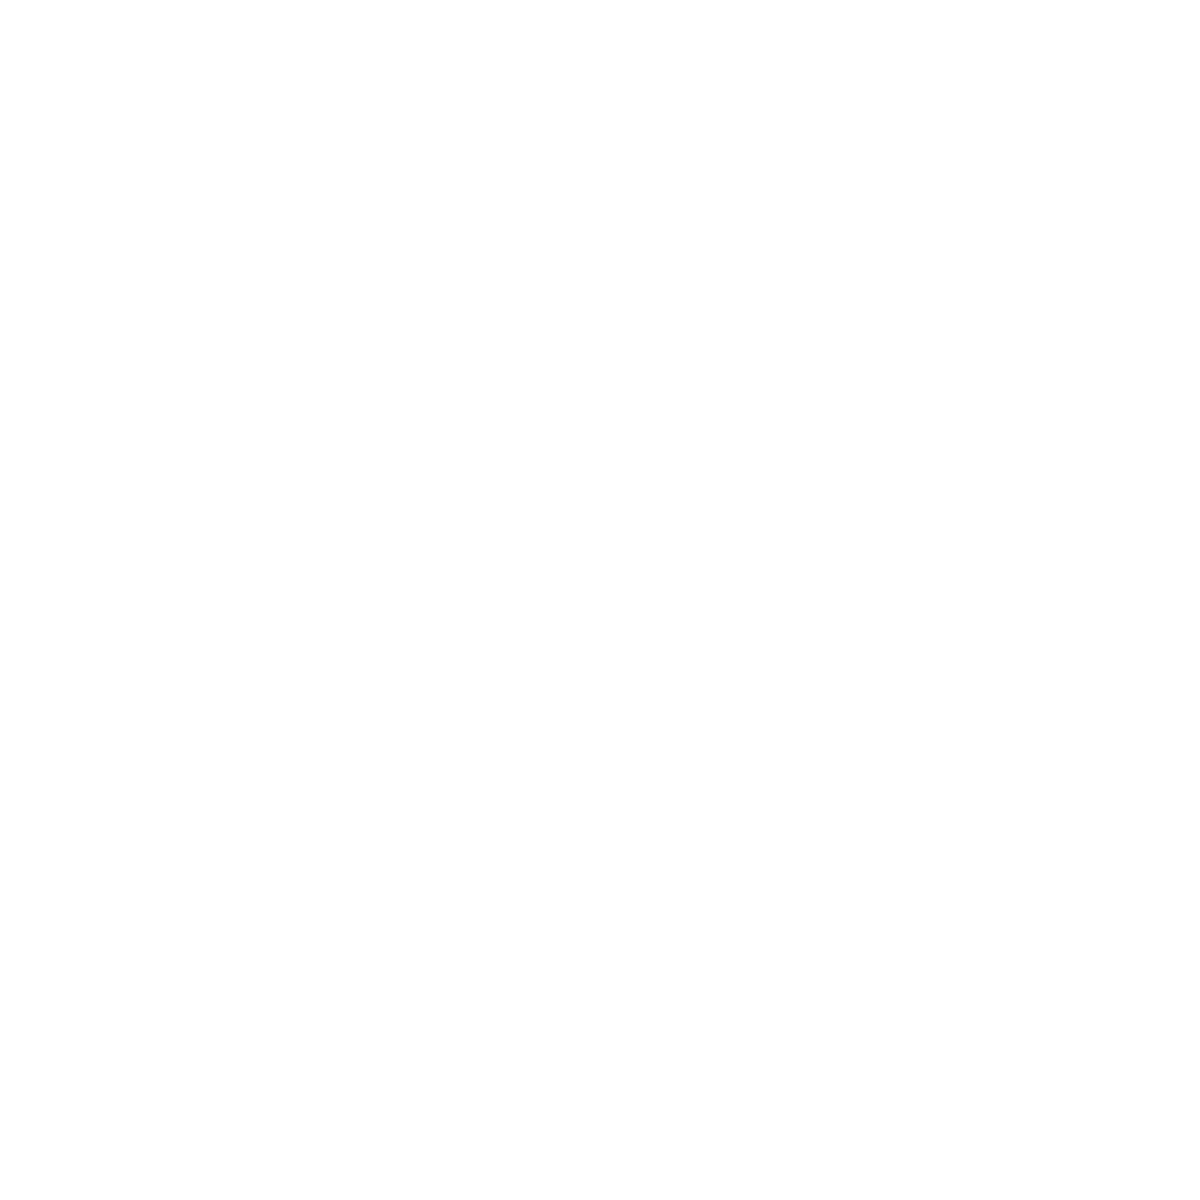 Organizing Empowerment PAC